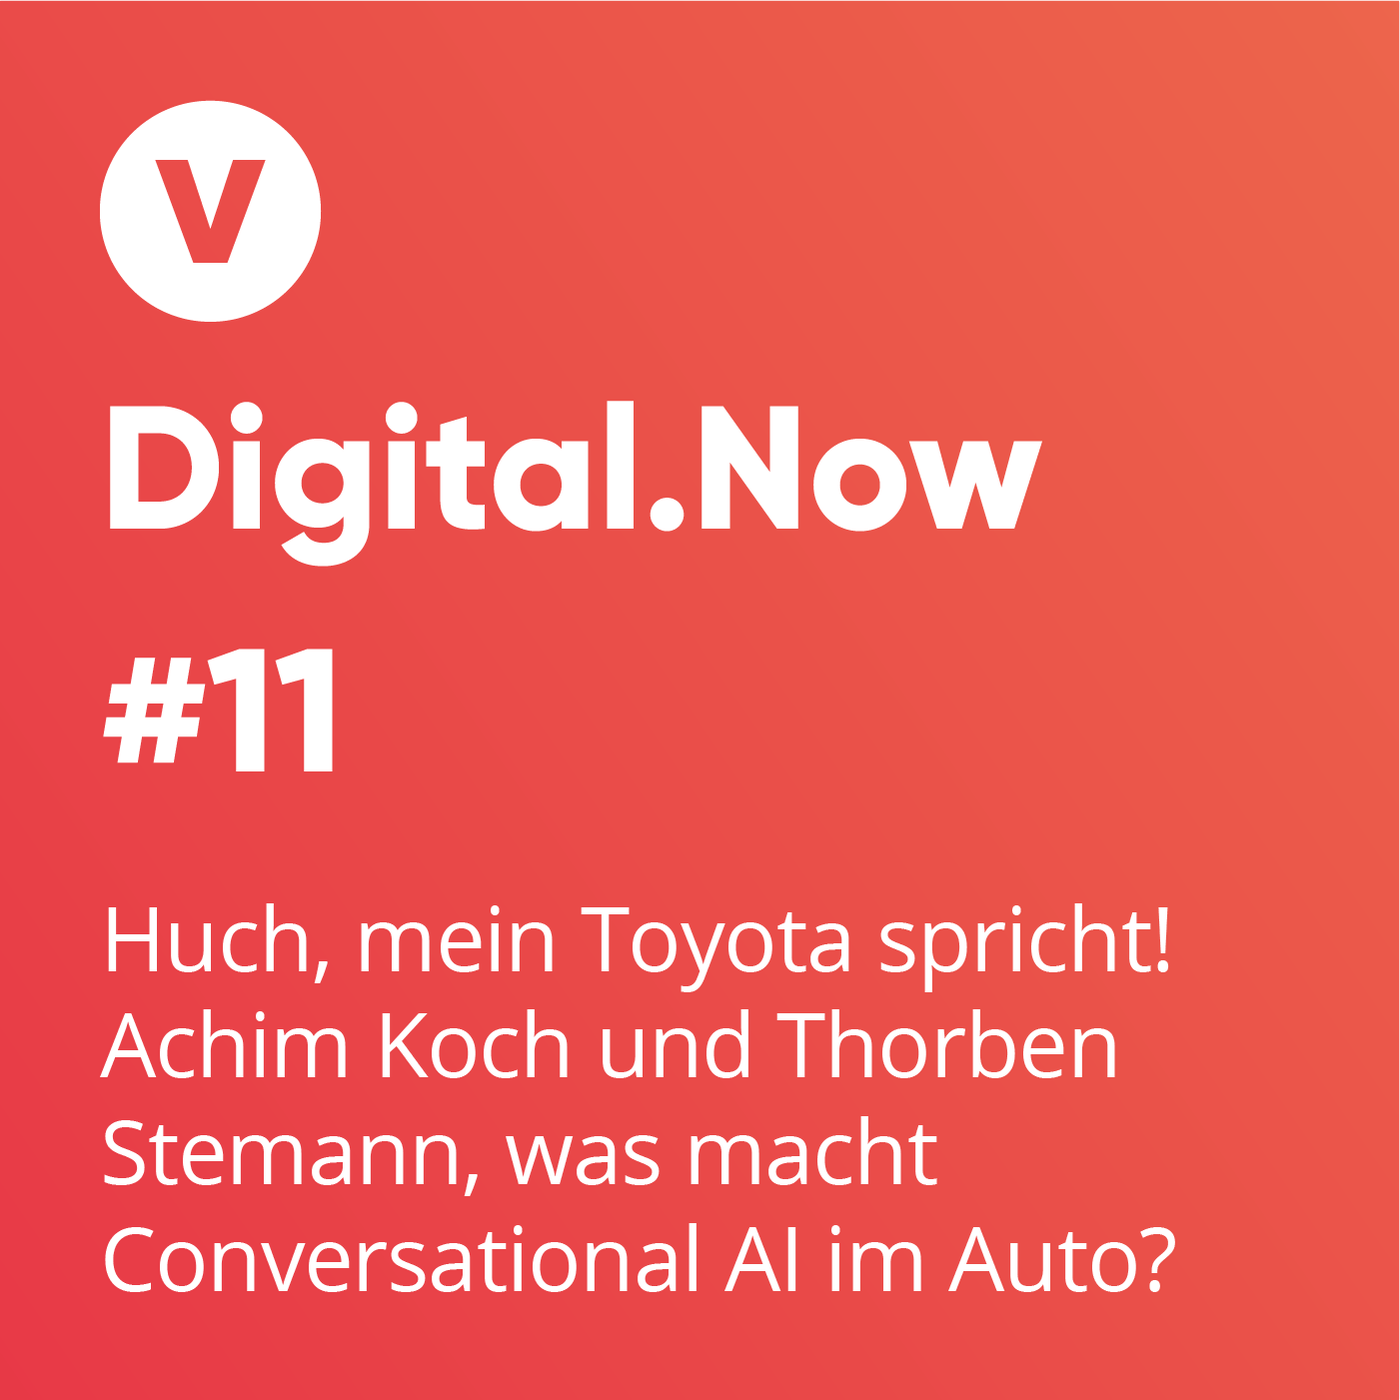 Huch, mein Toyota spricht! Achim Koch und Thorben Stemann, was genau macht Conversational AI im Auto?